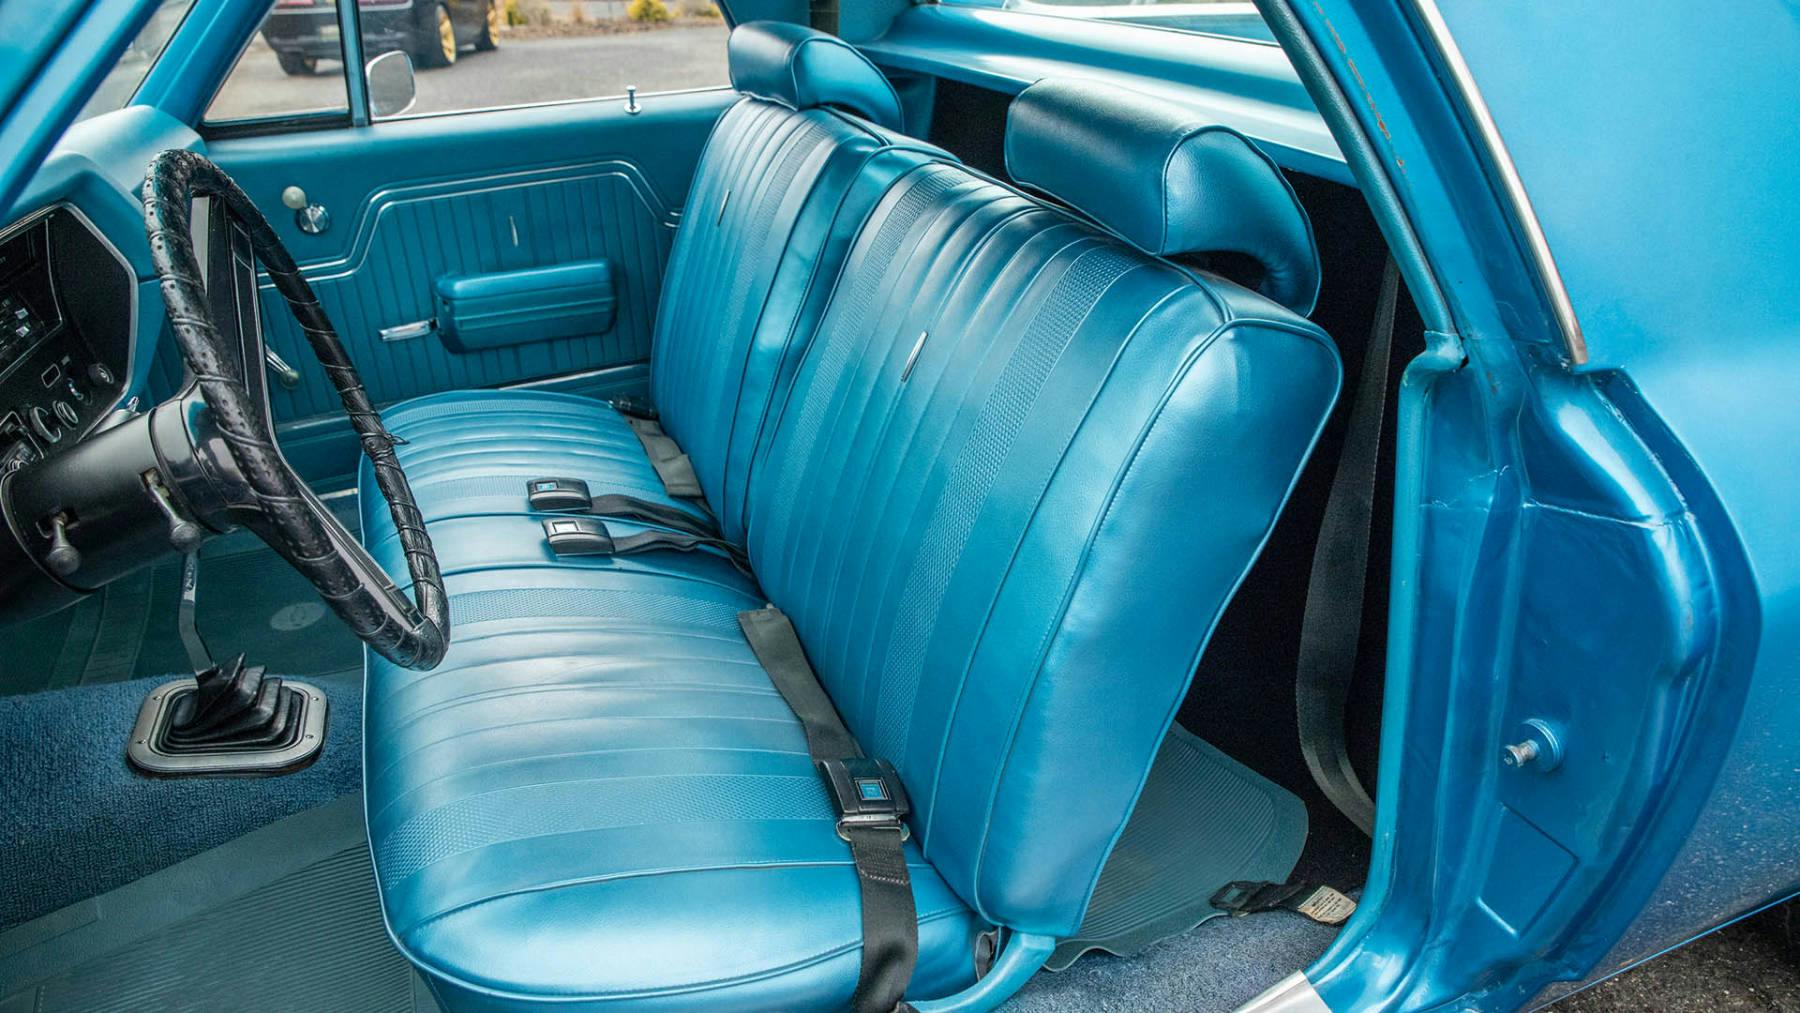 1970 Chevrolet El Camino SS 396 interior seat